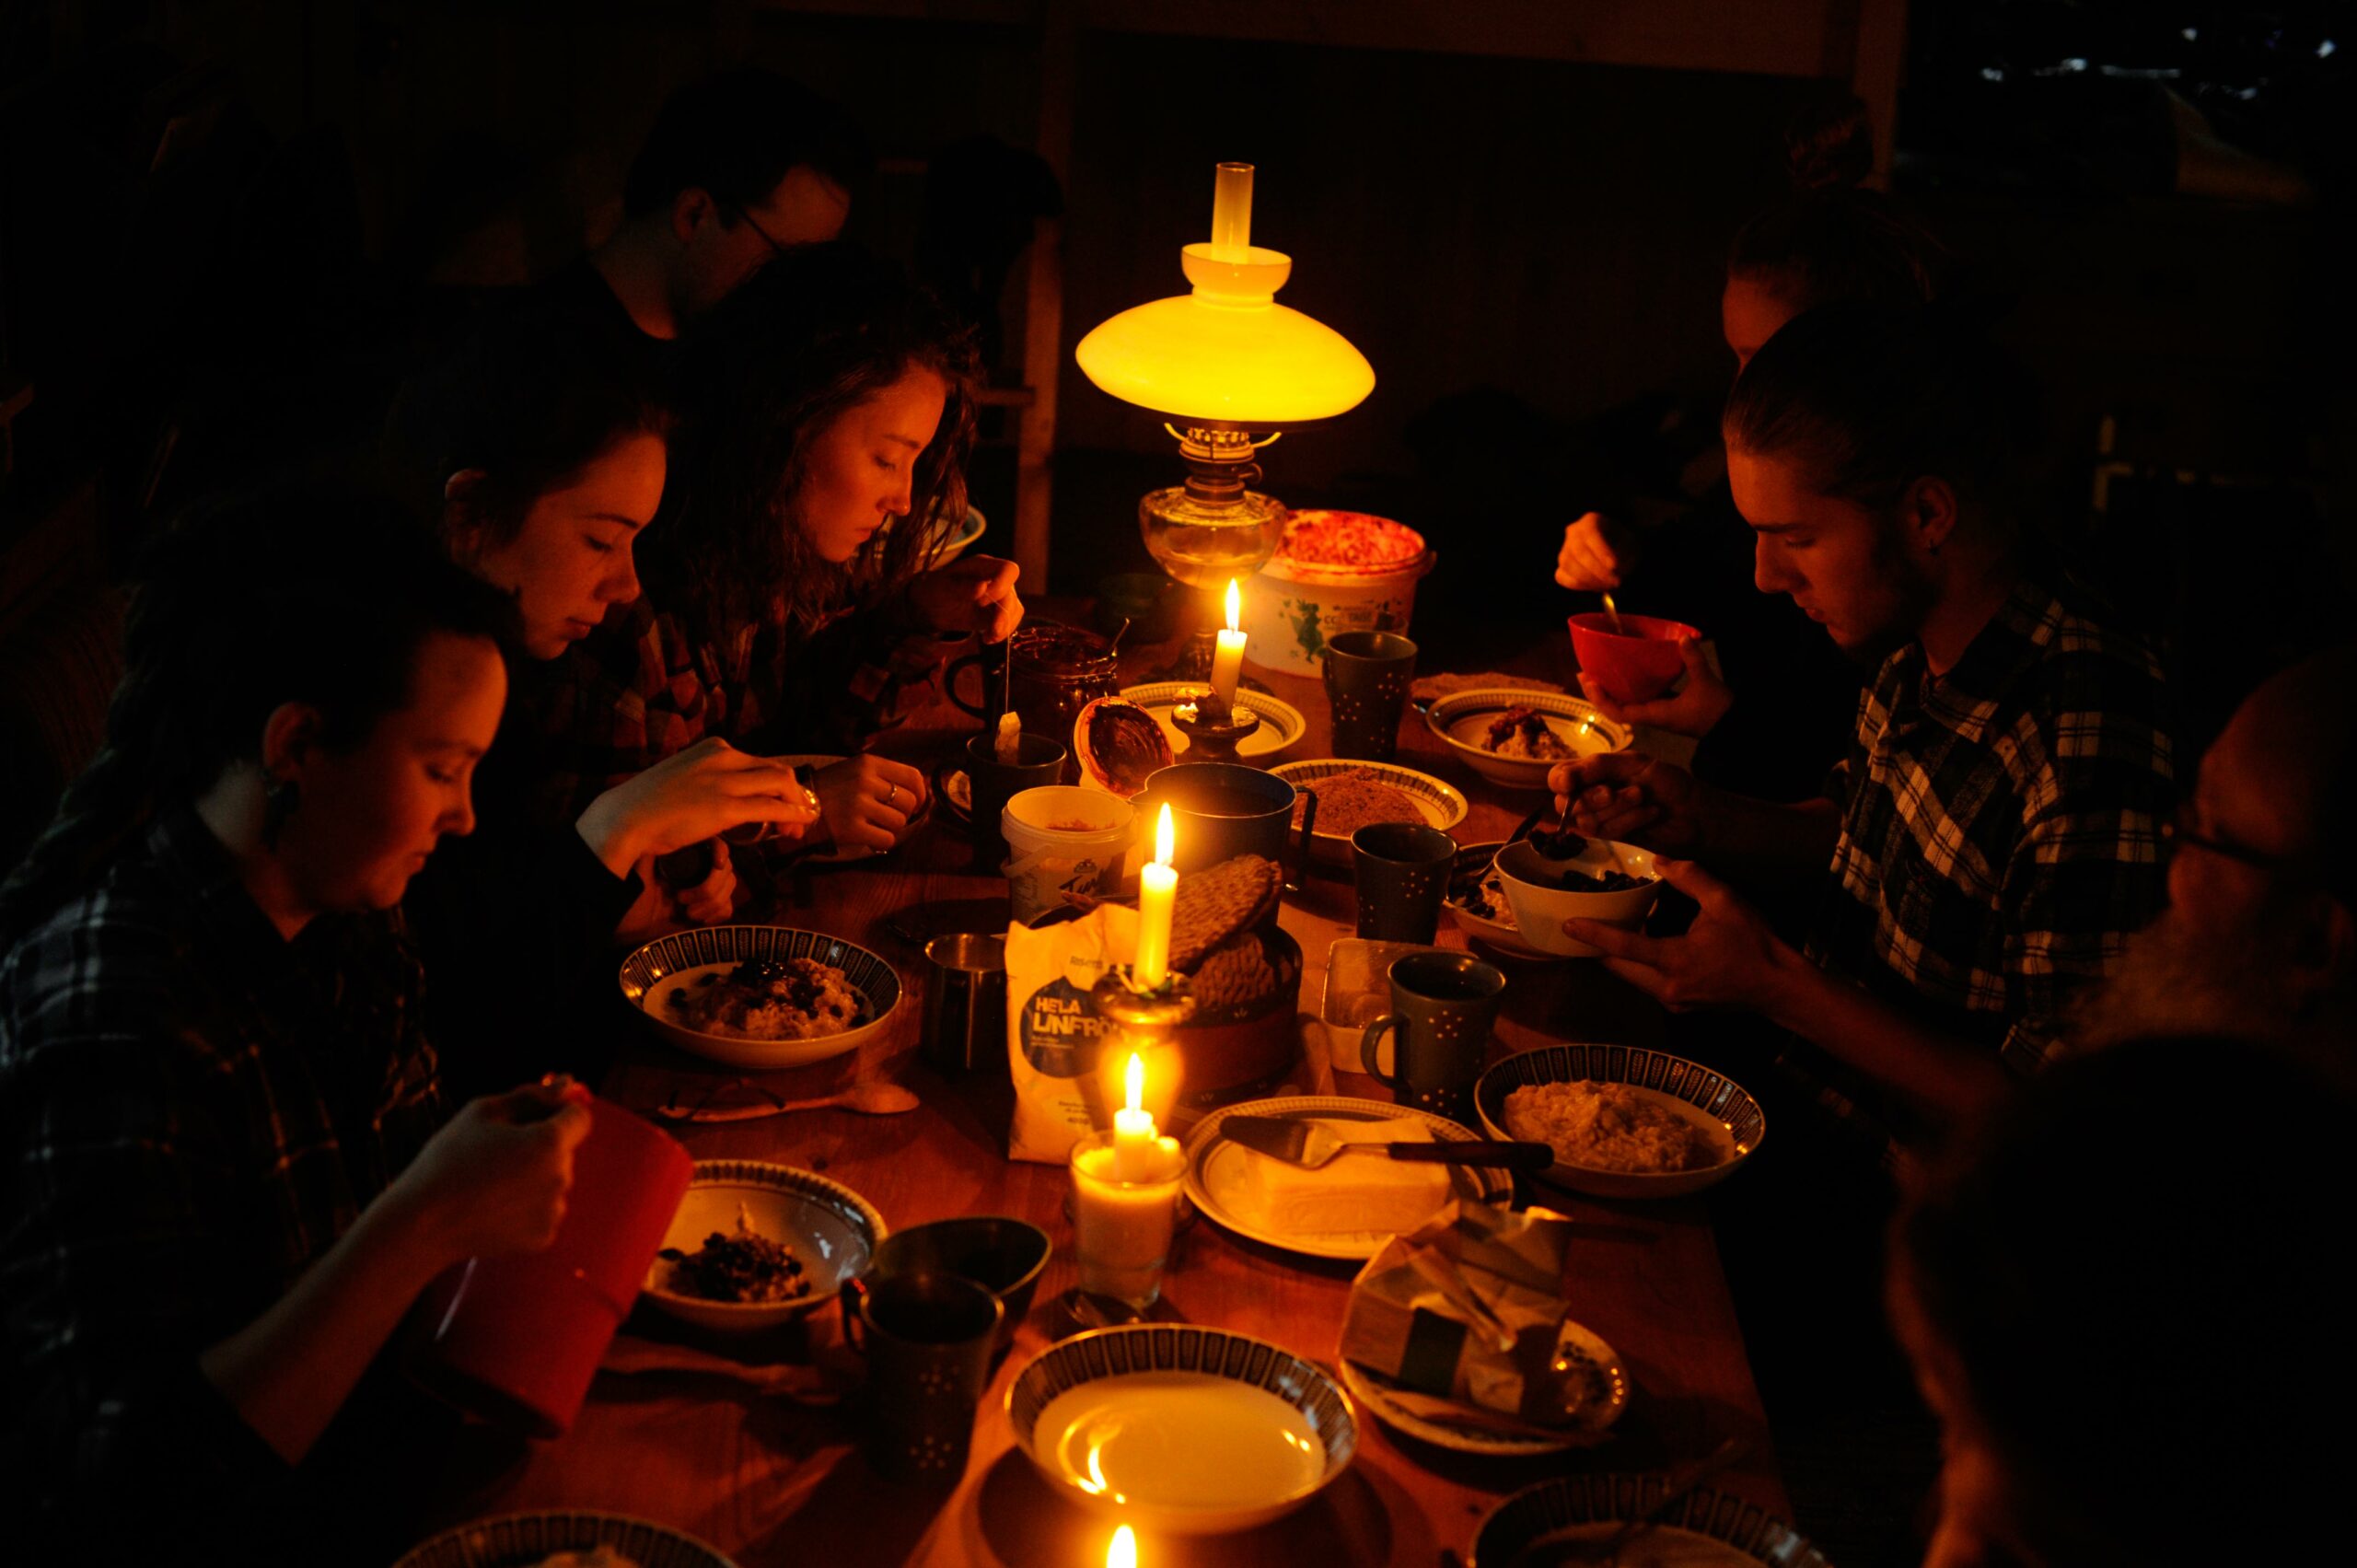 Sju människor äter middag i skenet av levande ljus.